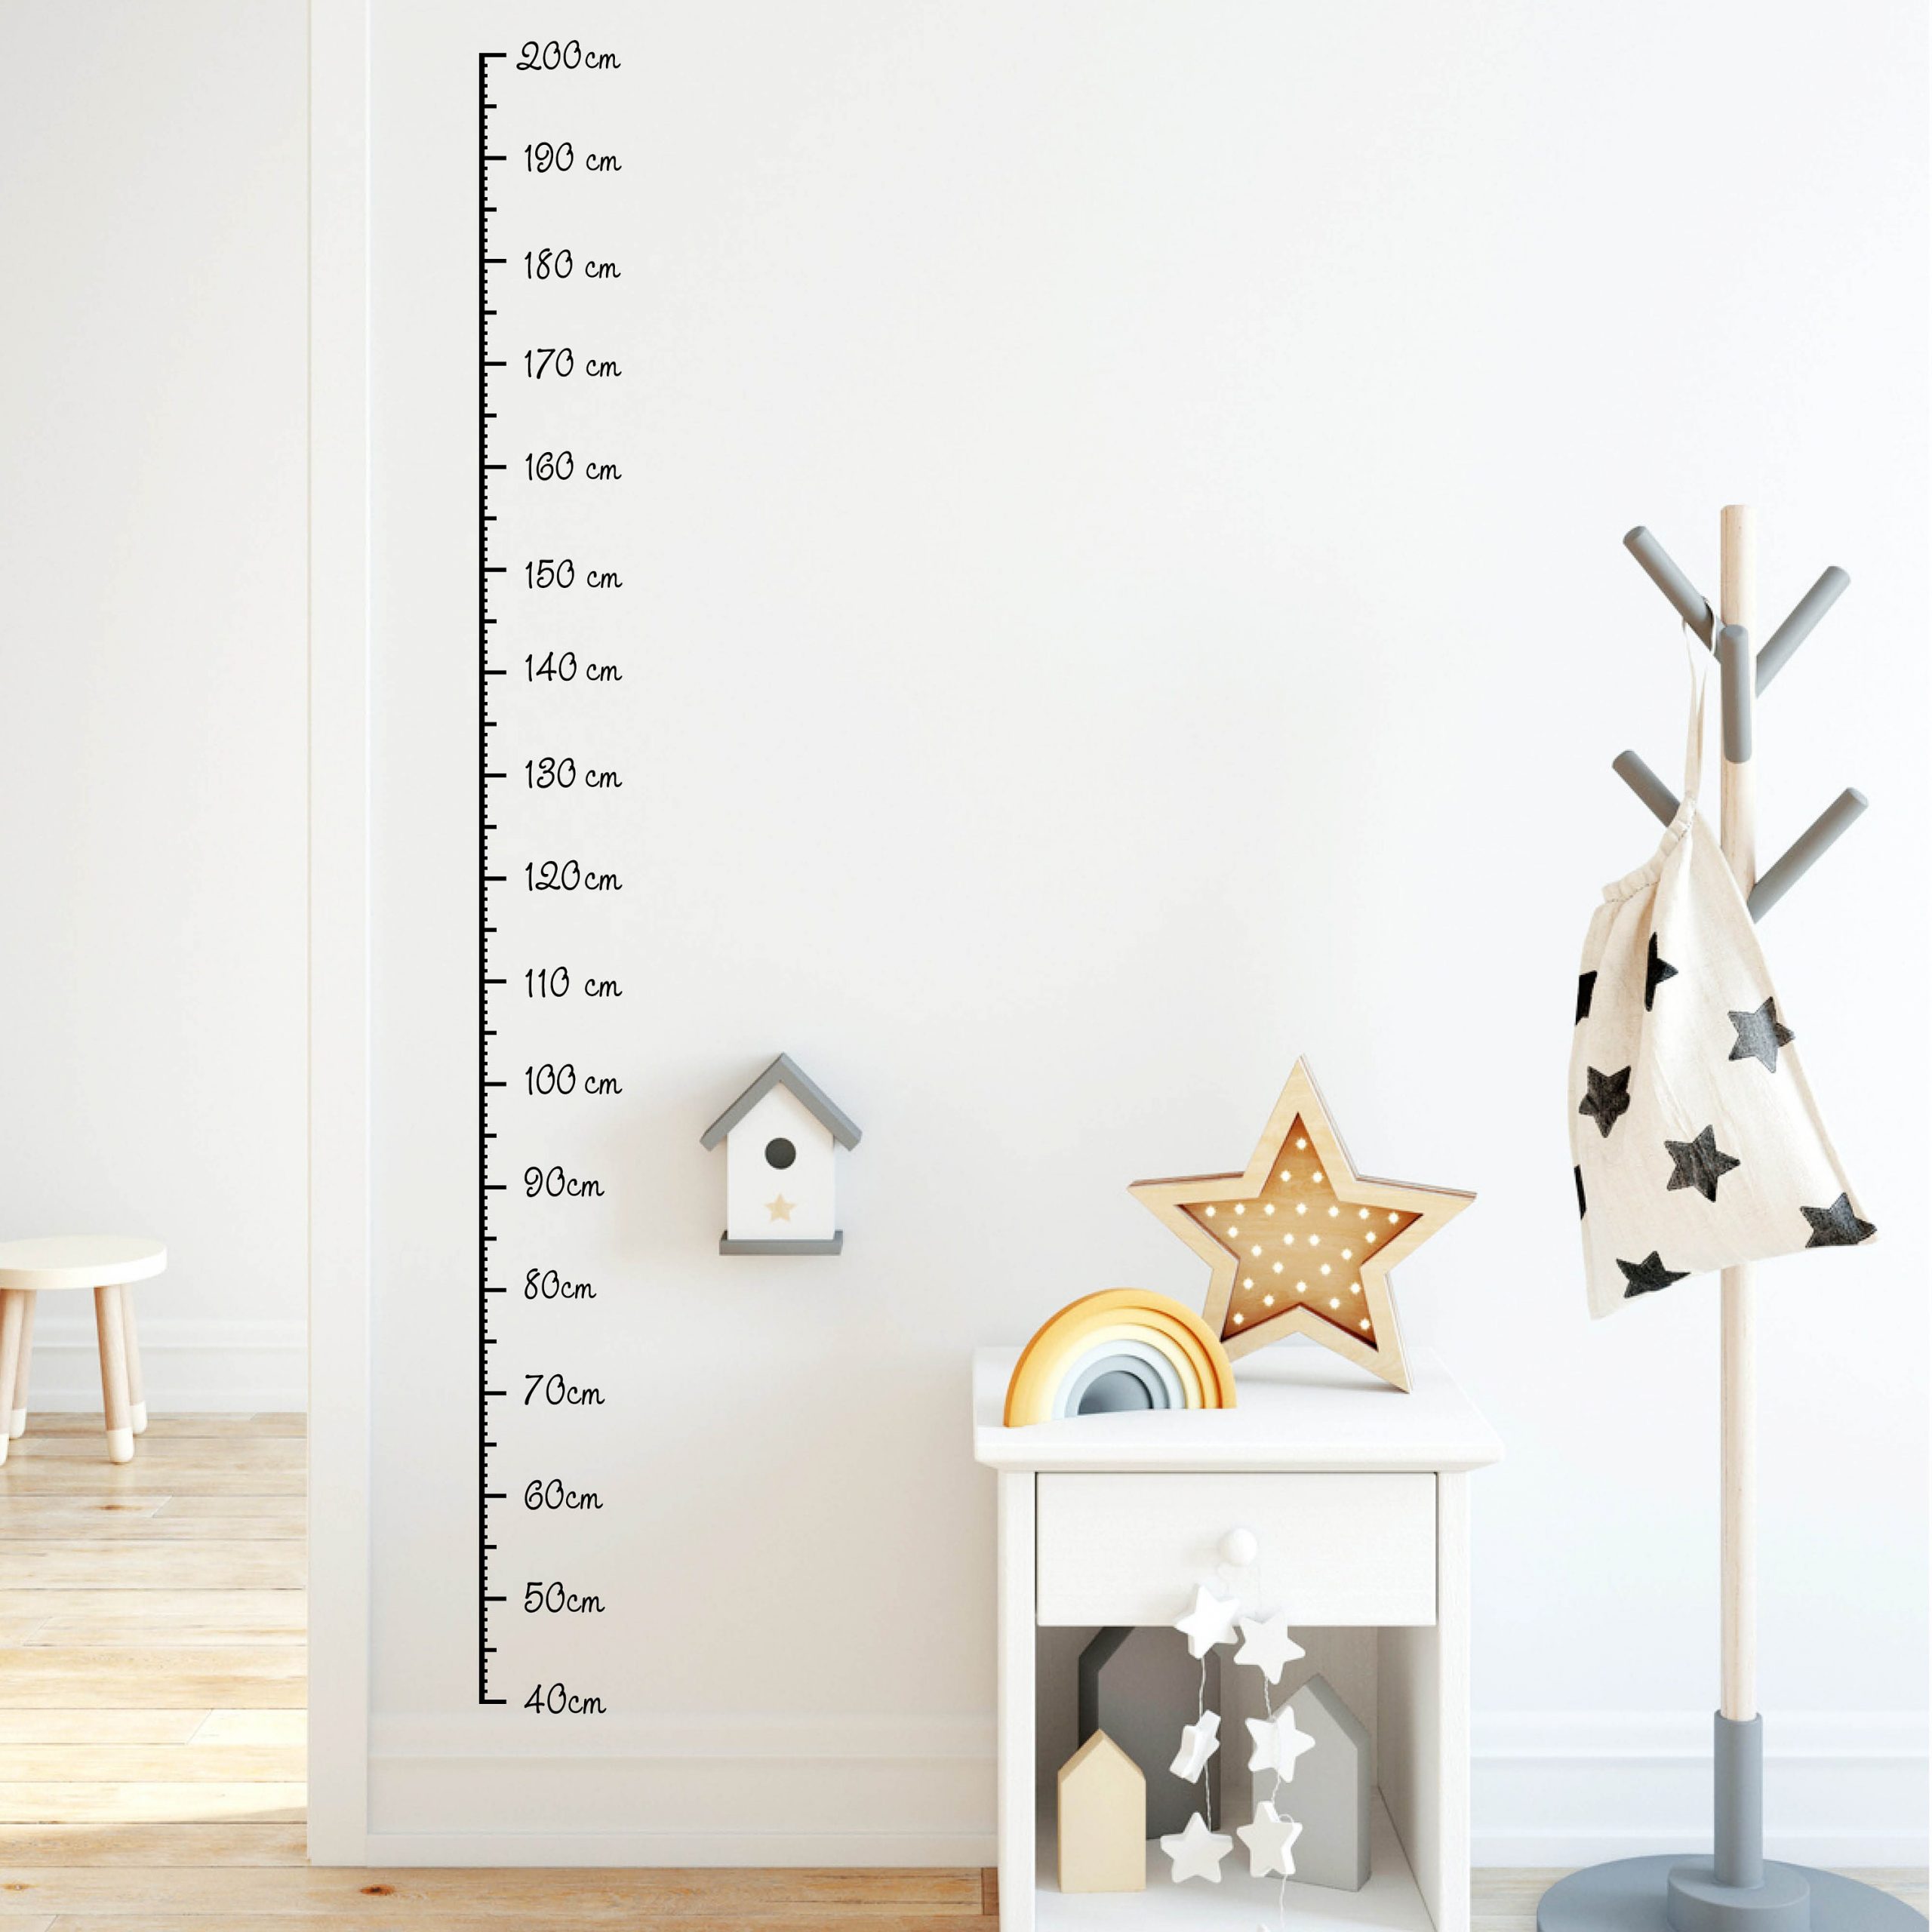 Wandtatto Kinderzimmer Messlatte Maßband 40 – 200 cm konturgeschnitten – ohne Hintergrundfolie